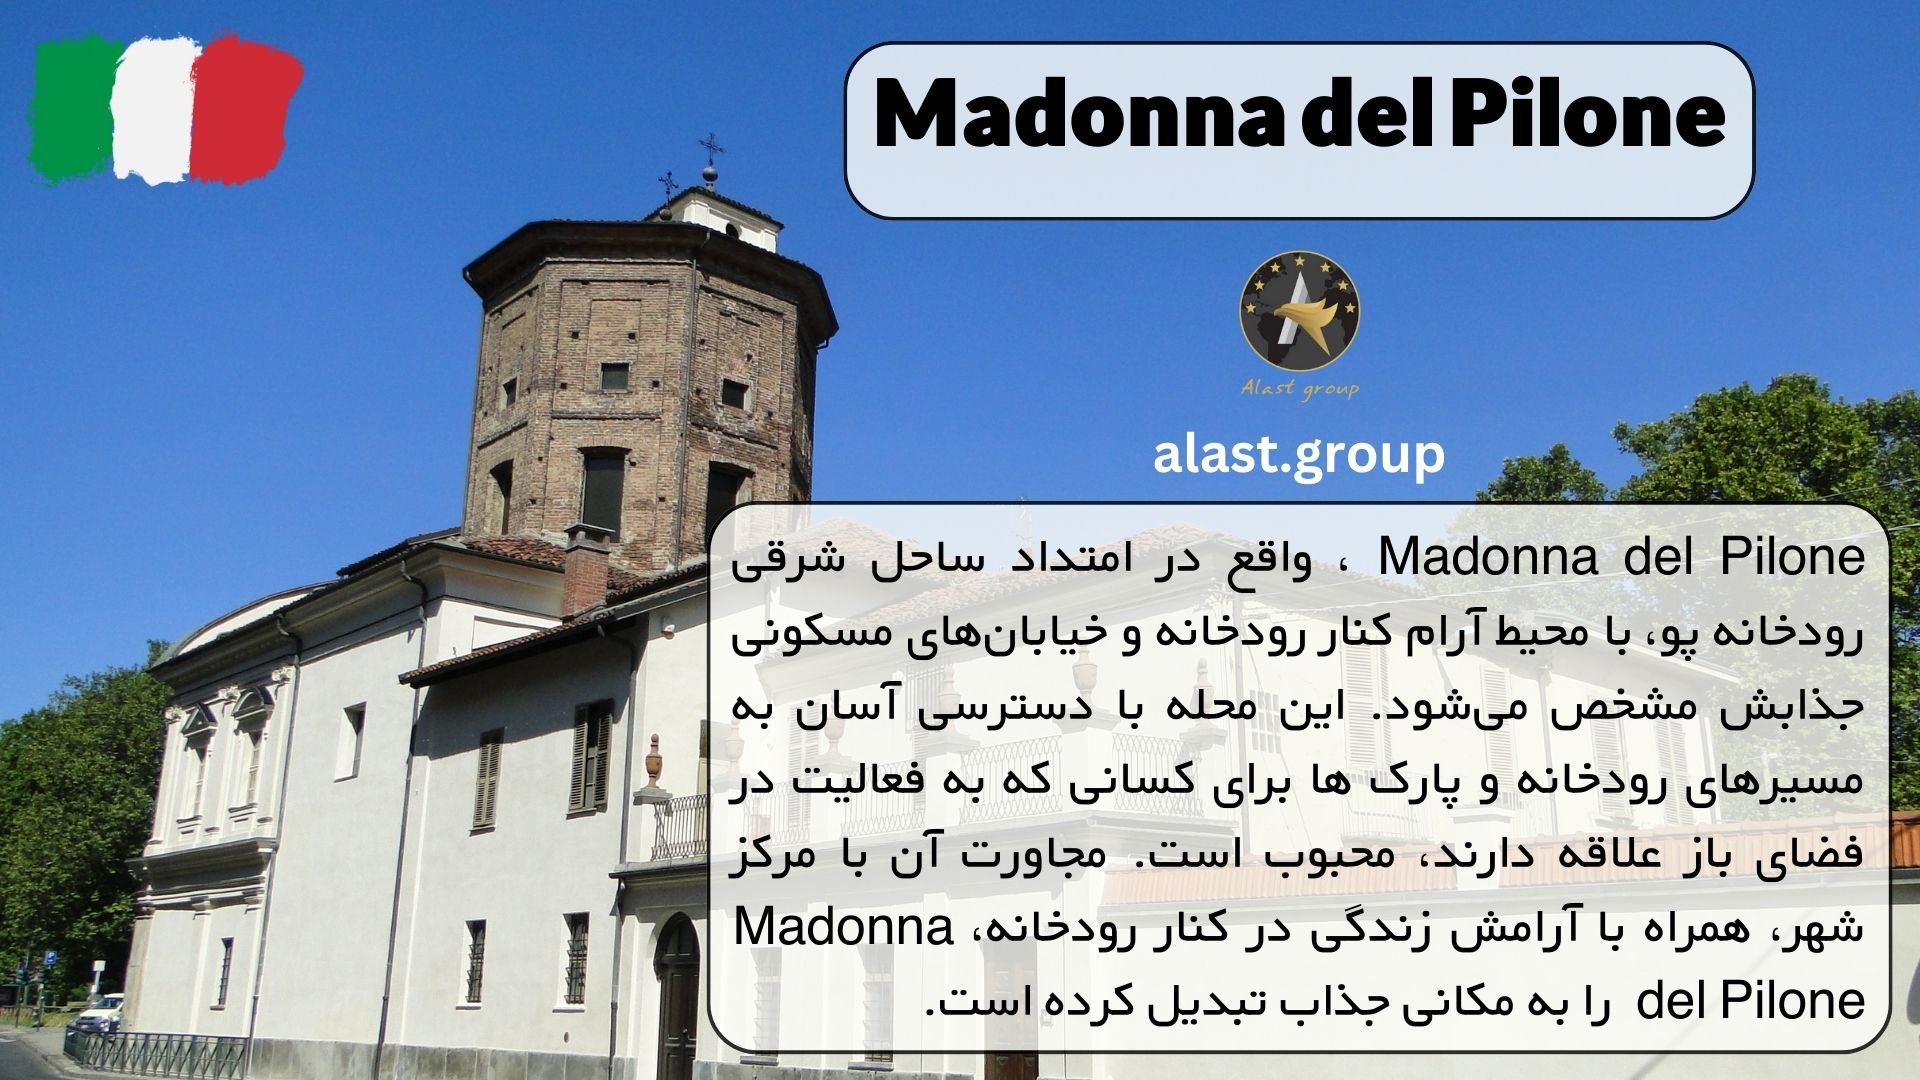 Madonna del Pilone